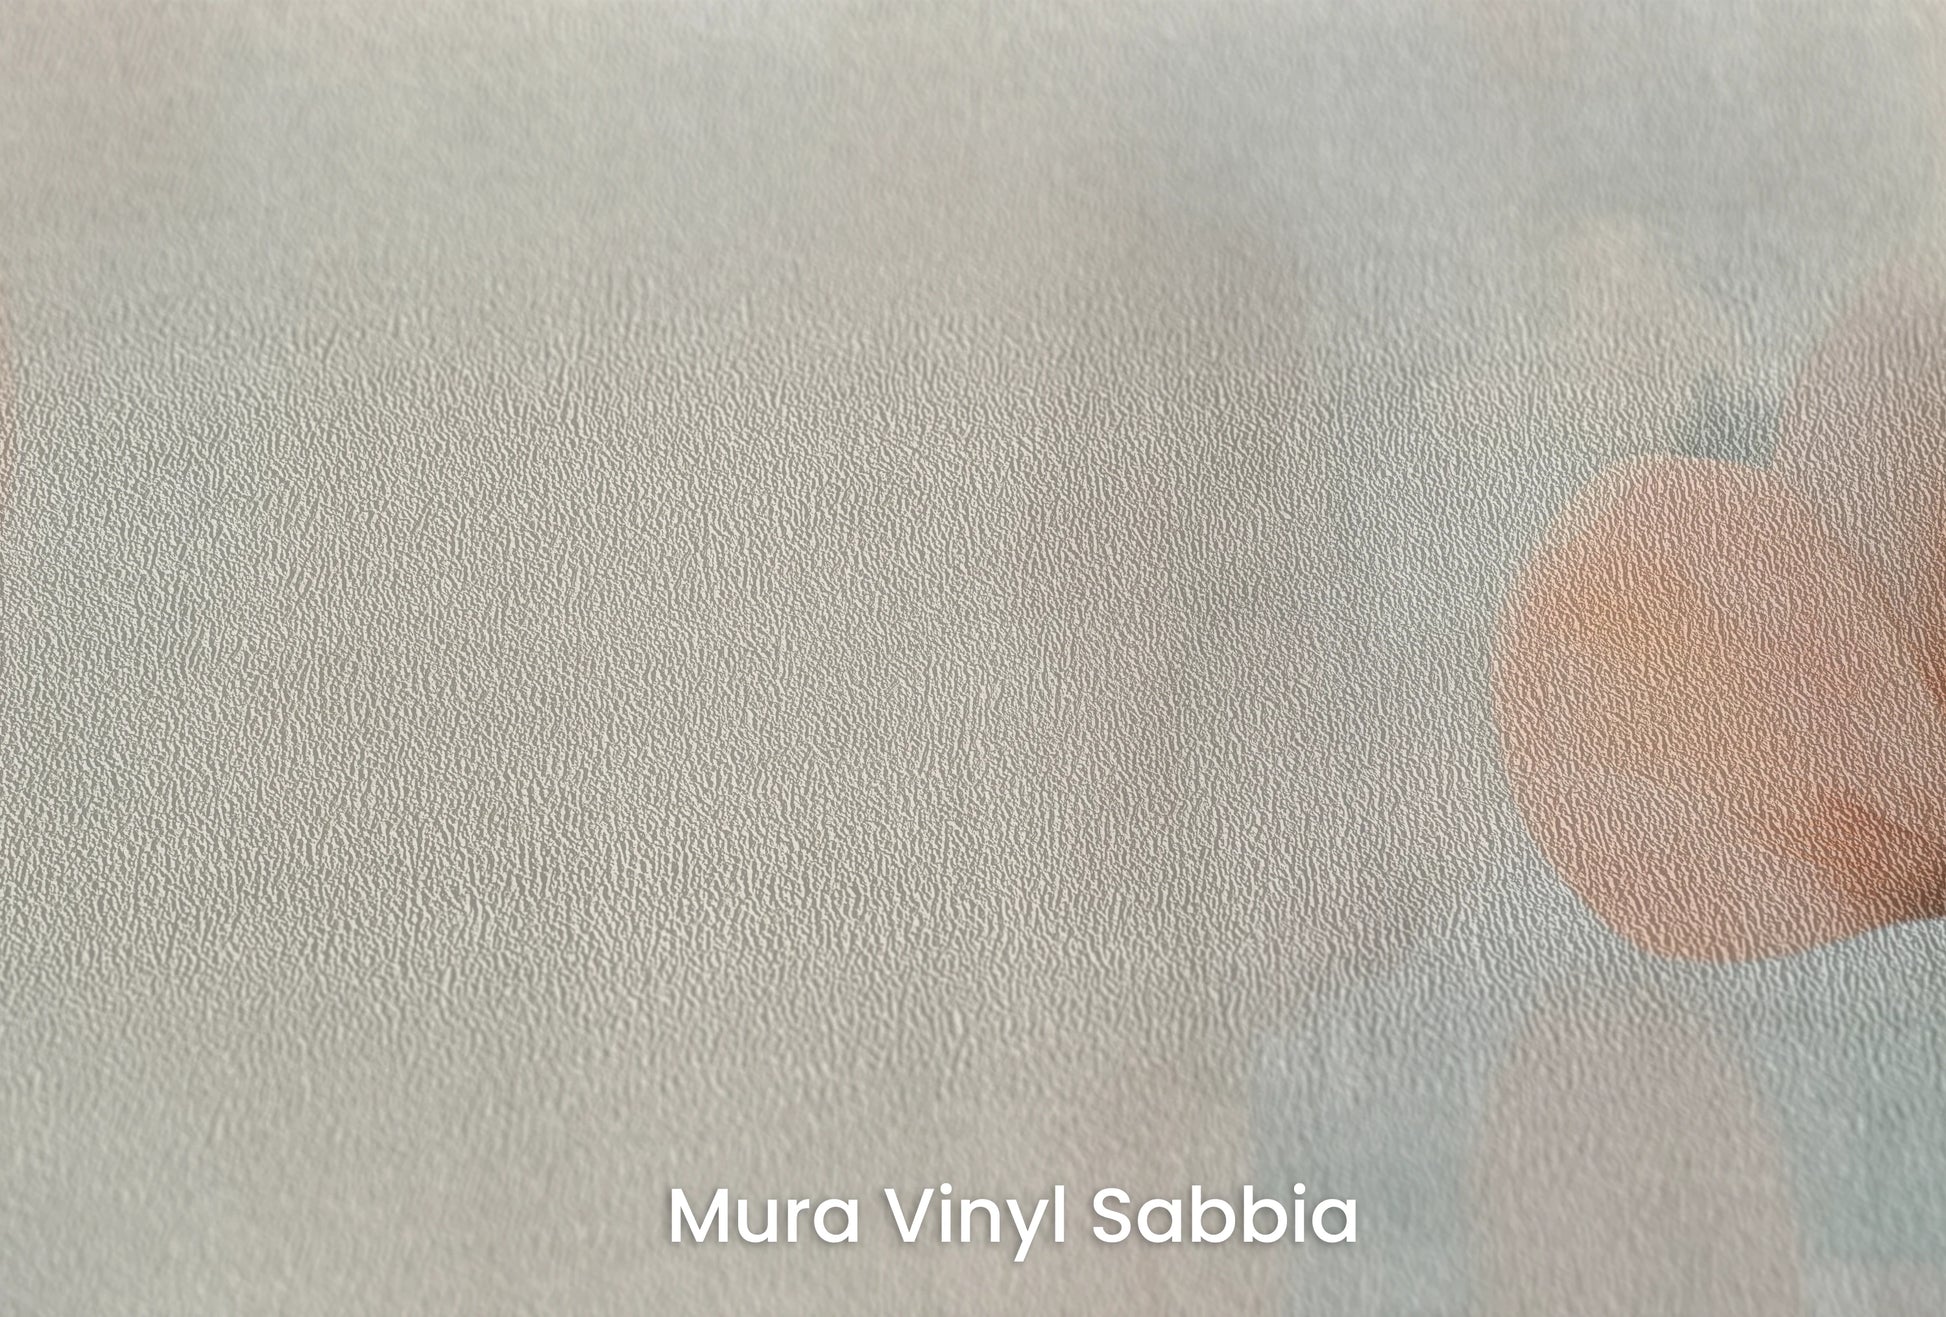 Zbliżenie na artystyczną fototapetę o nazwie Abstract Blossom Art na podłożu Mura Vinyl Sabbia struktura grubego ziarna piasku.